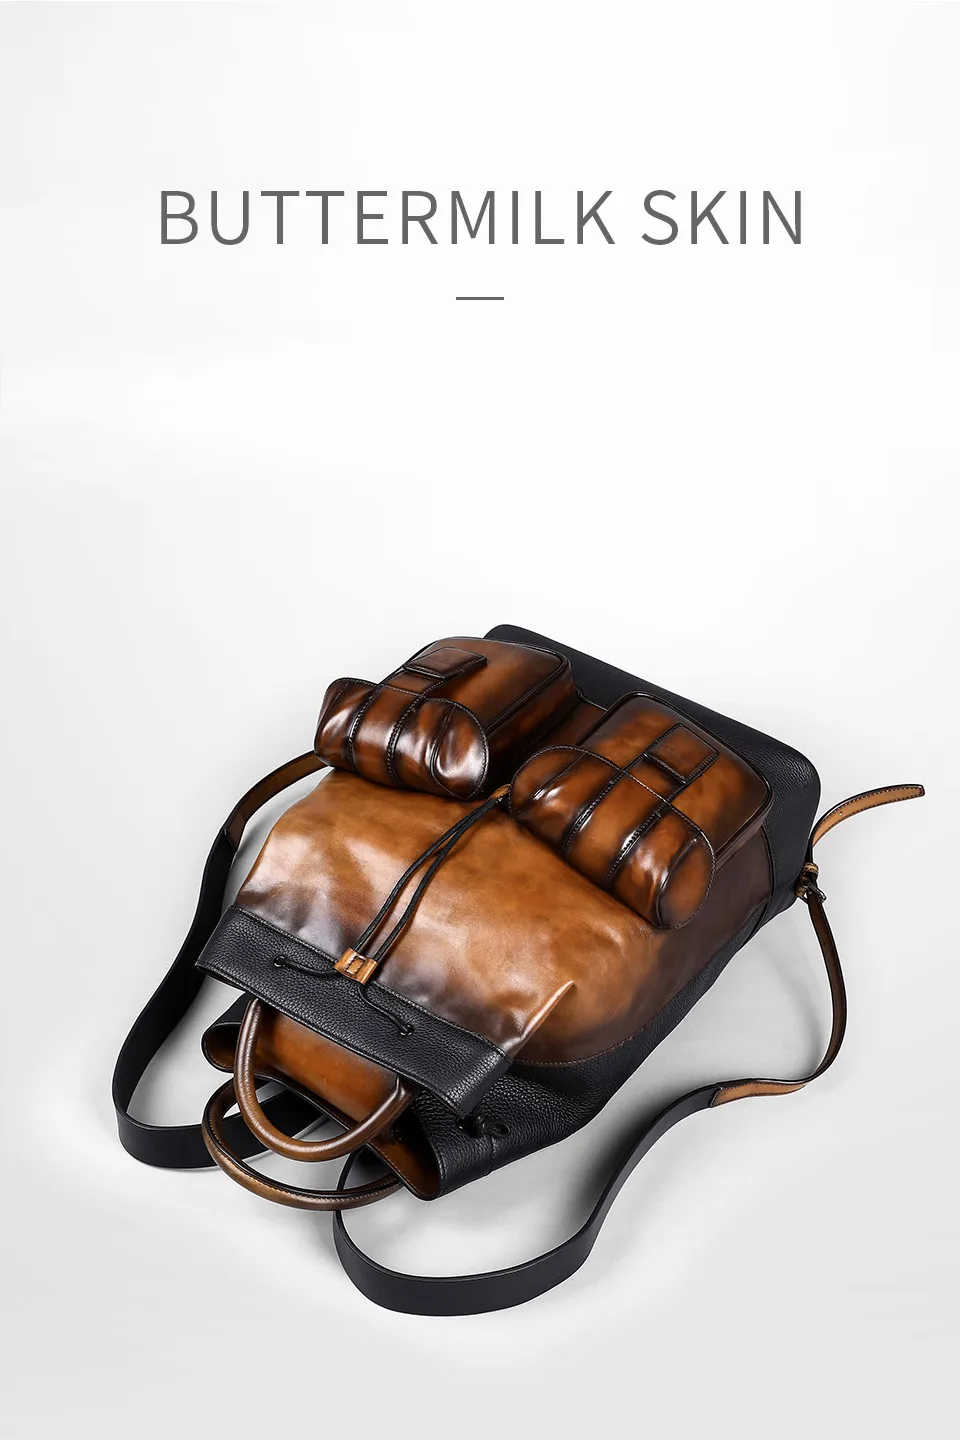 DHL,, классический мужской рюкзак из натуральной кожи, многофункциональный, известный бренд, дизайнерская сумка, винтажная сумка для ноутбука, дорожная сумка